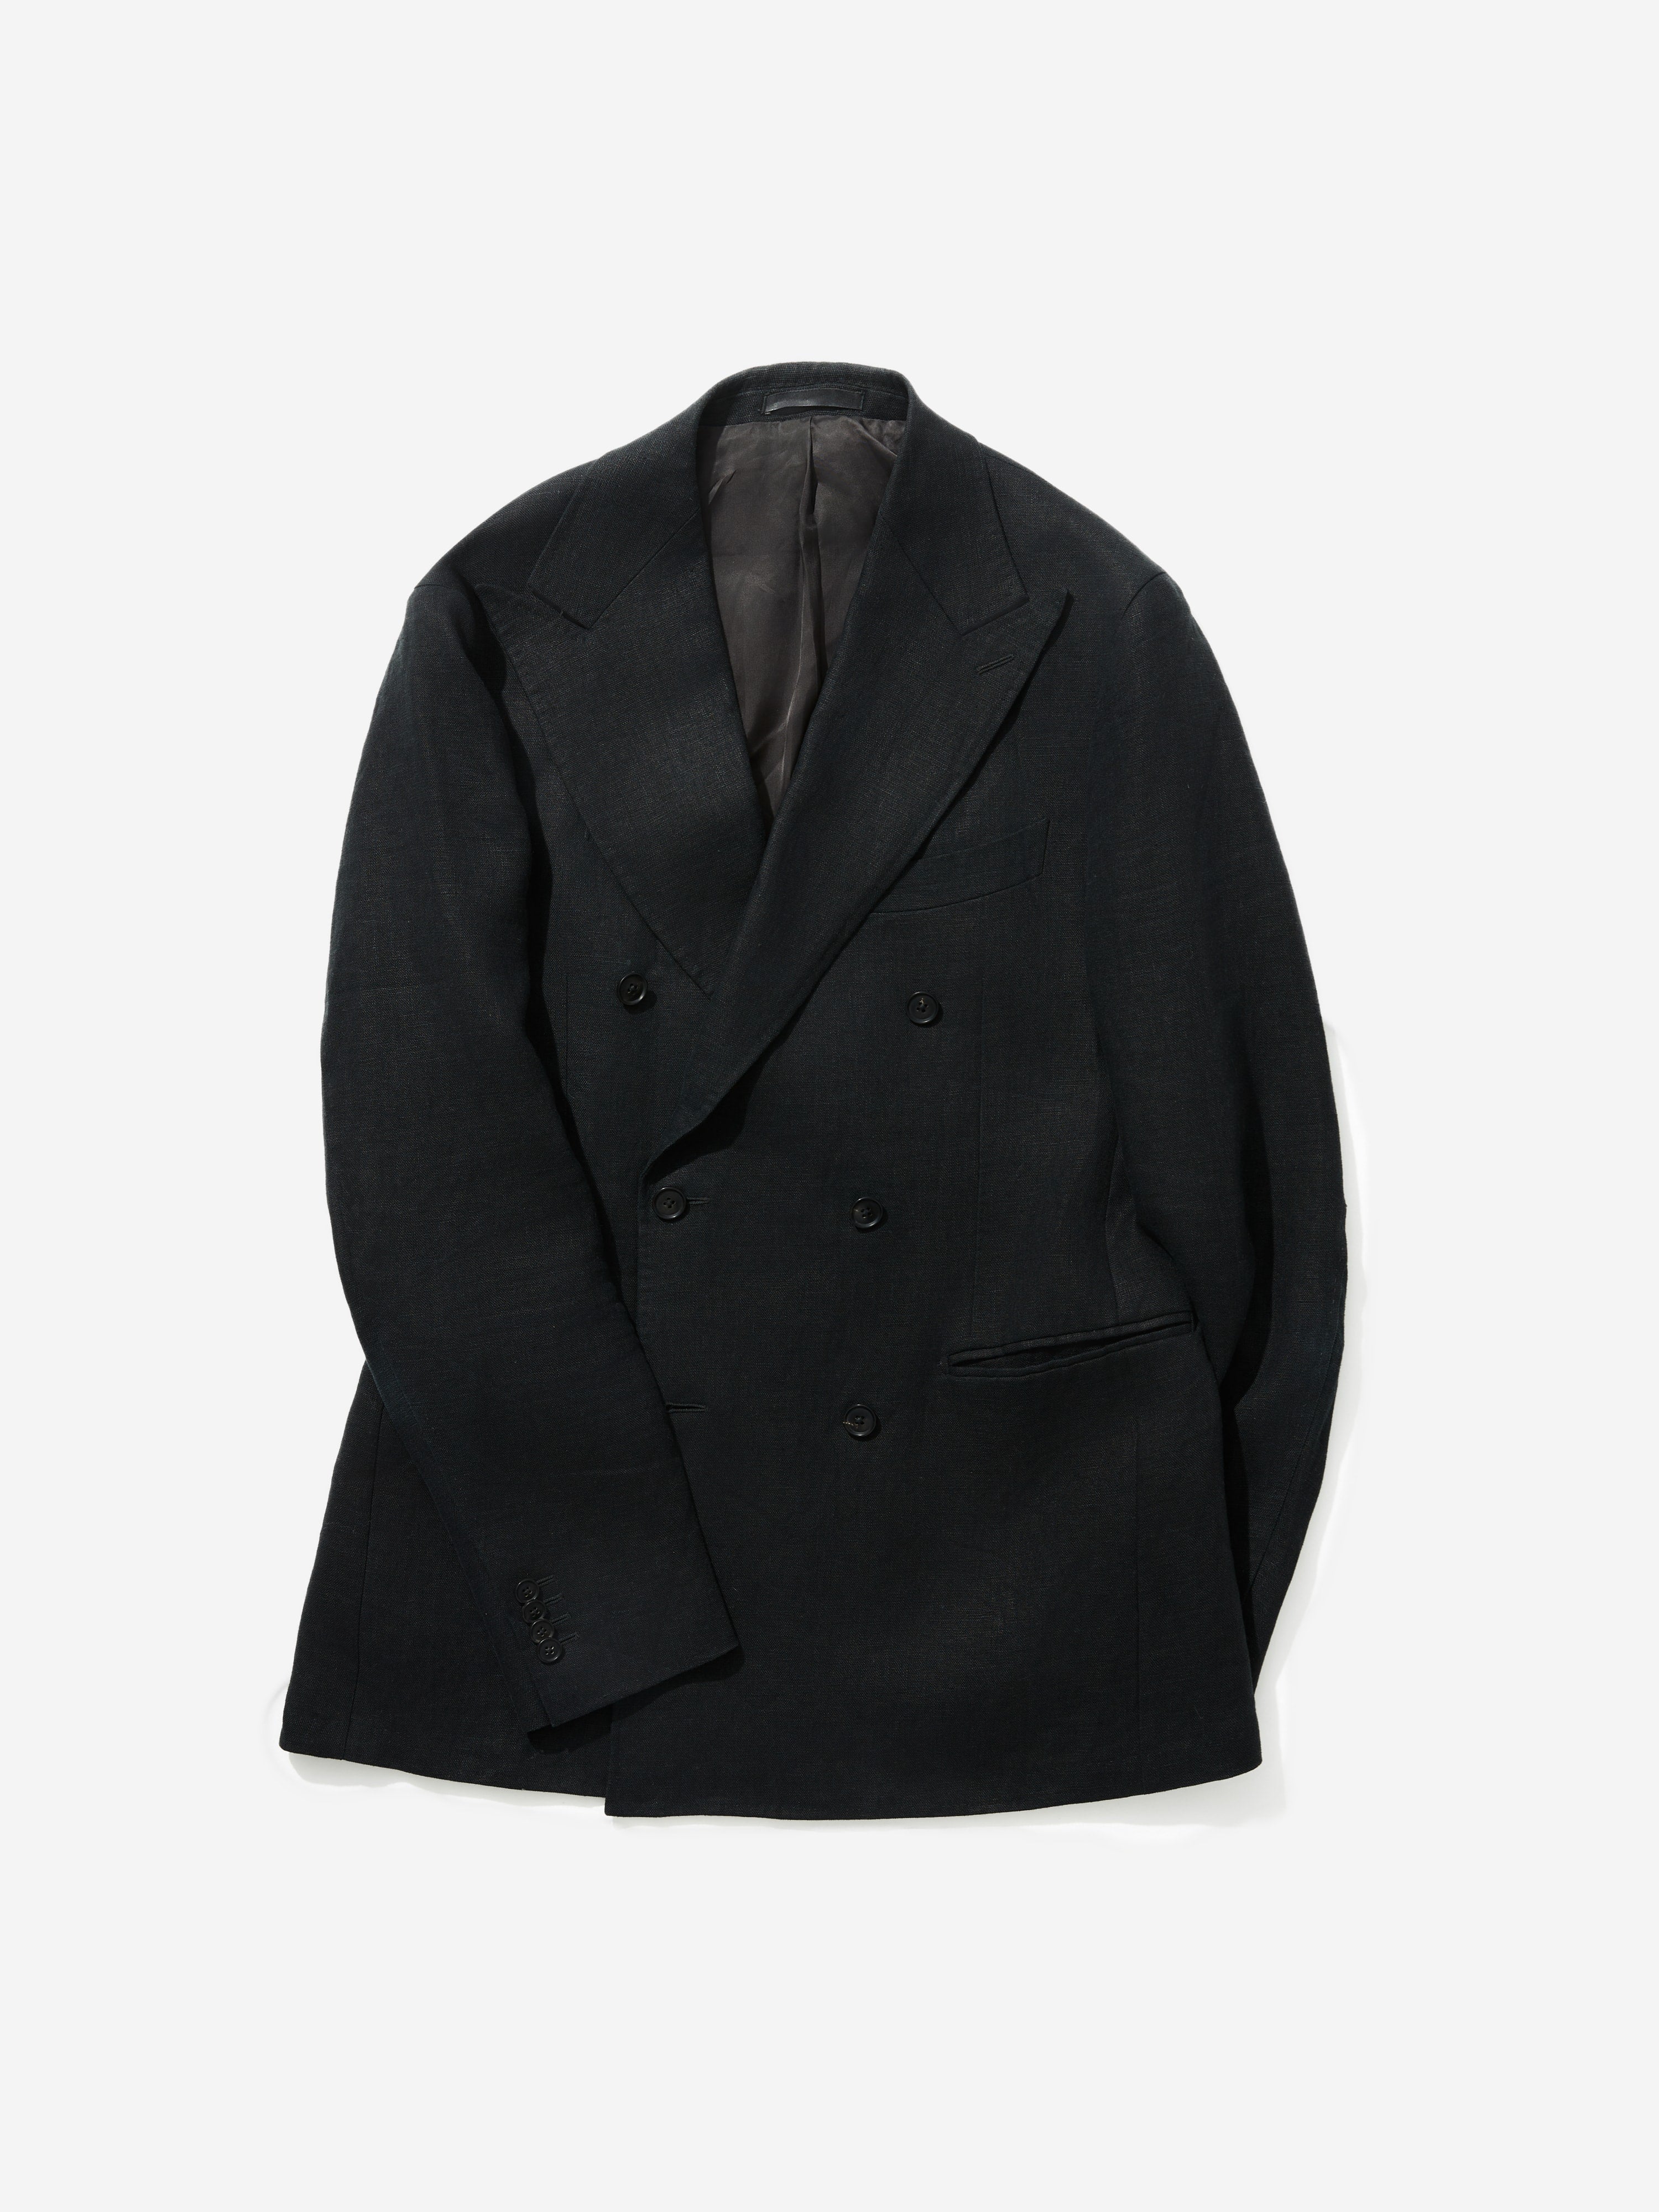 Black Linen Suit - Grand Le Mar